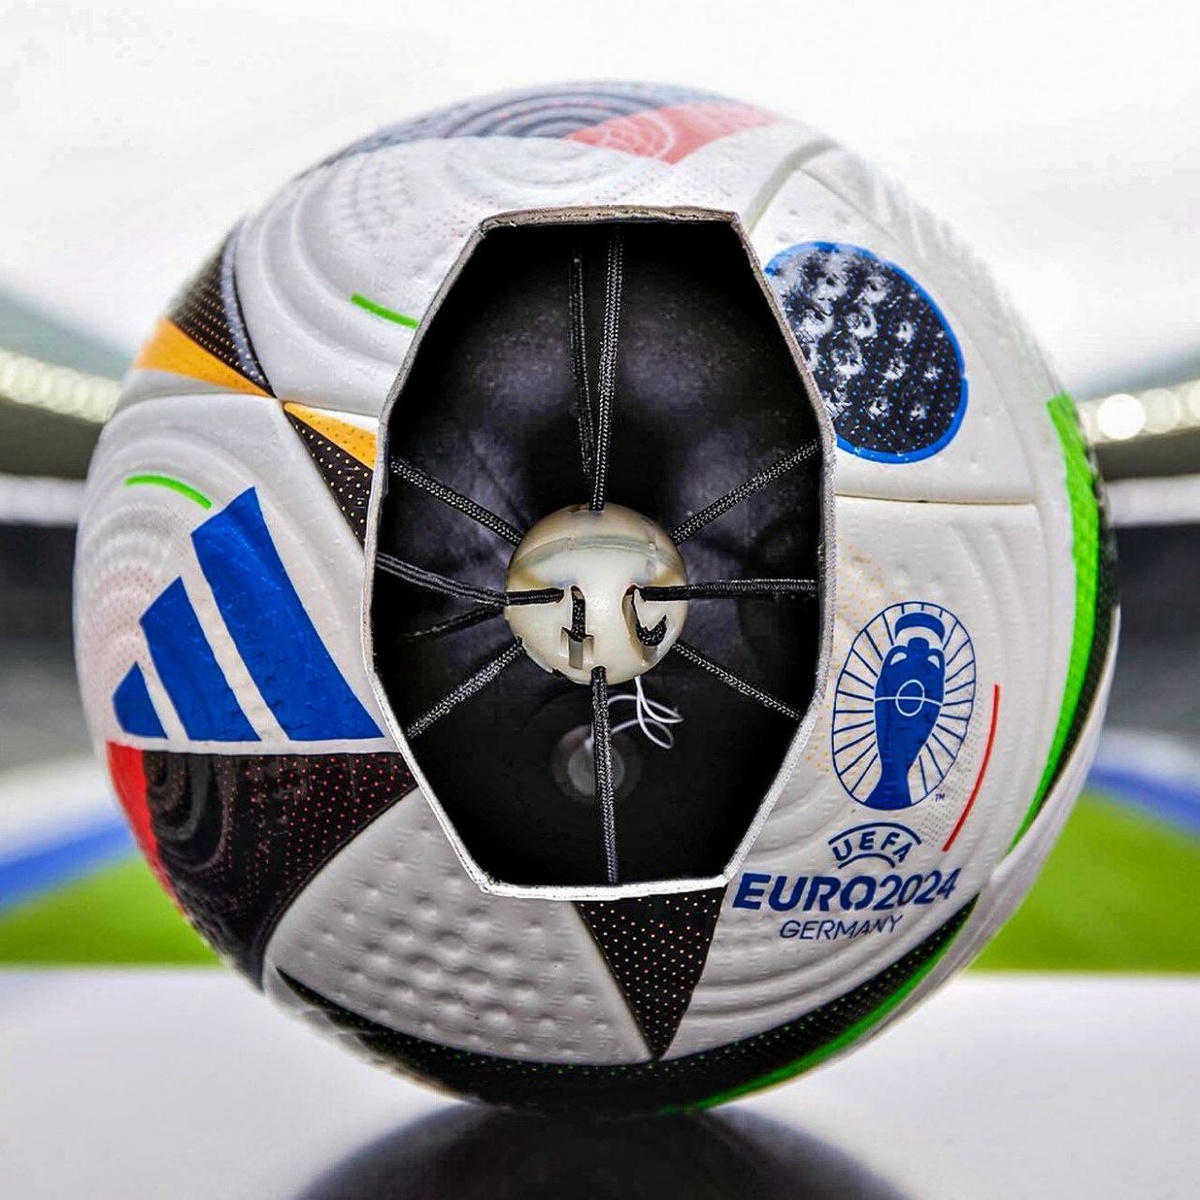 Так выглядит мяч Евро24 с чипом внутри